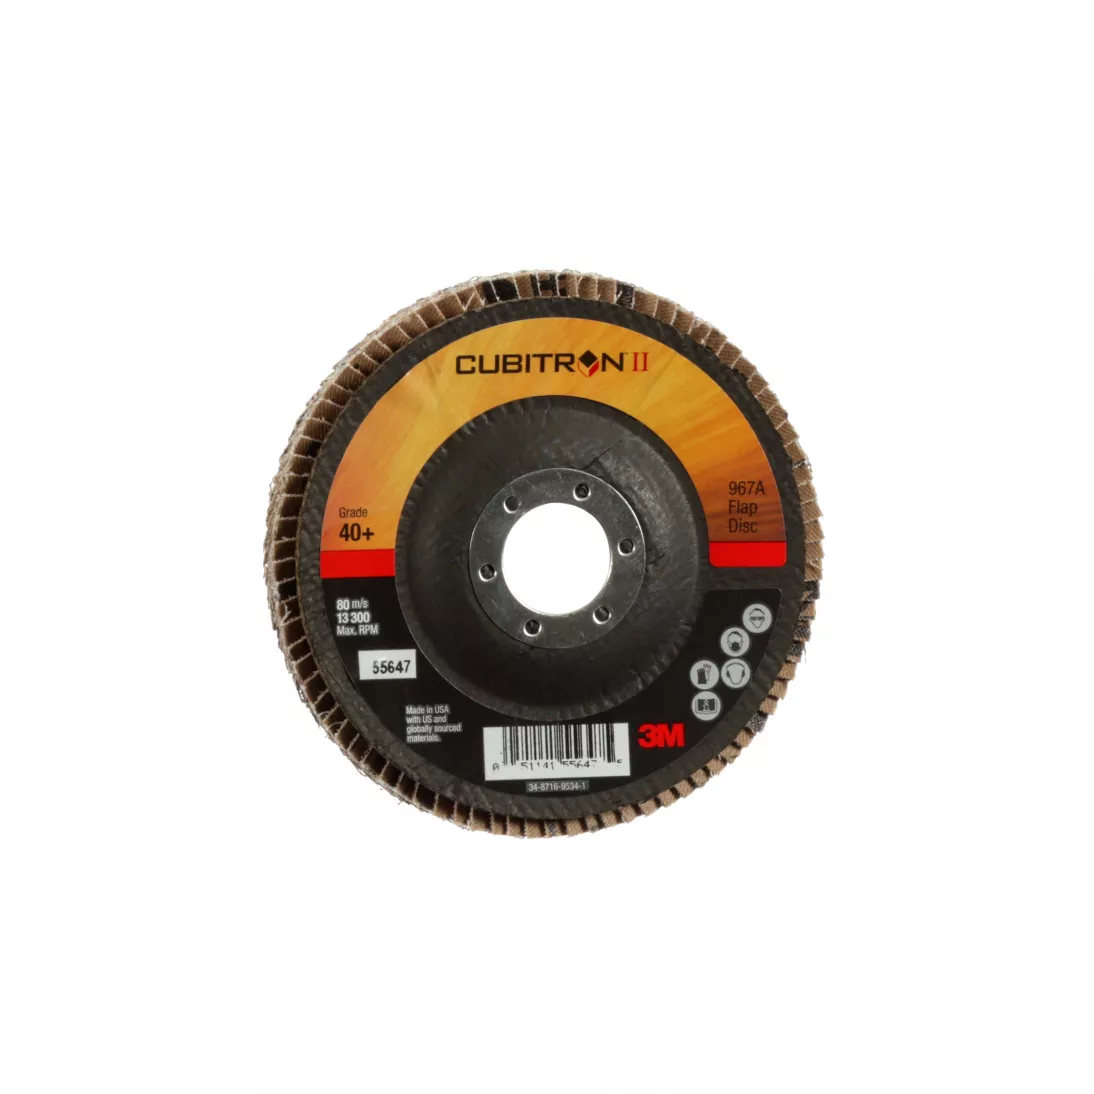 3M™ Cubitron™ II Flap Disc 967A, 40+, T29, 4-1/2 in x 7/8 in, Giant, 10
ea/Case